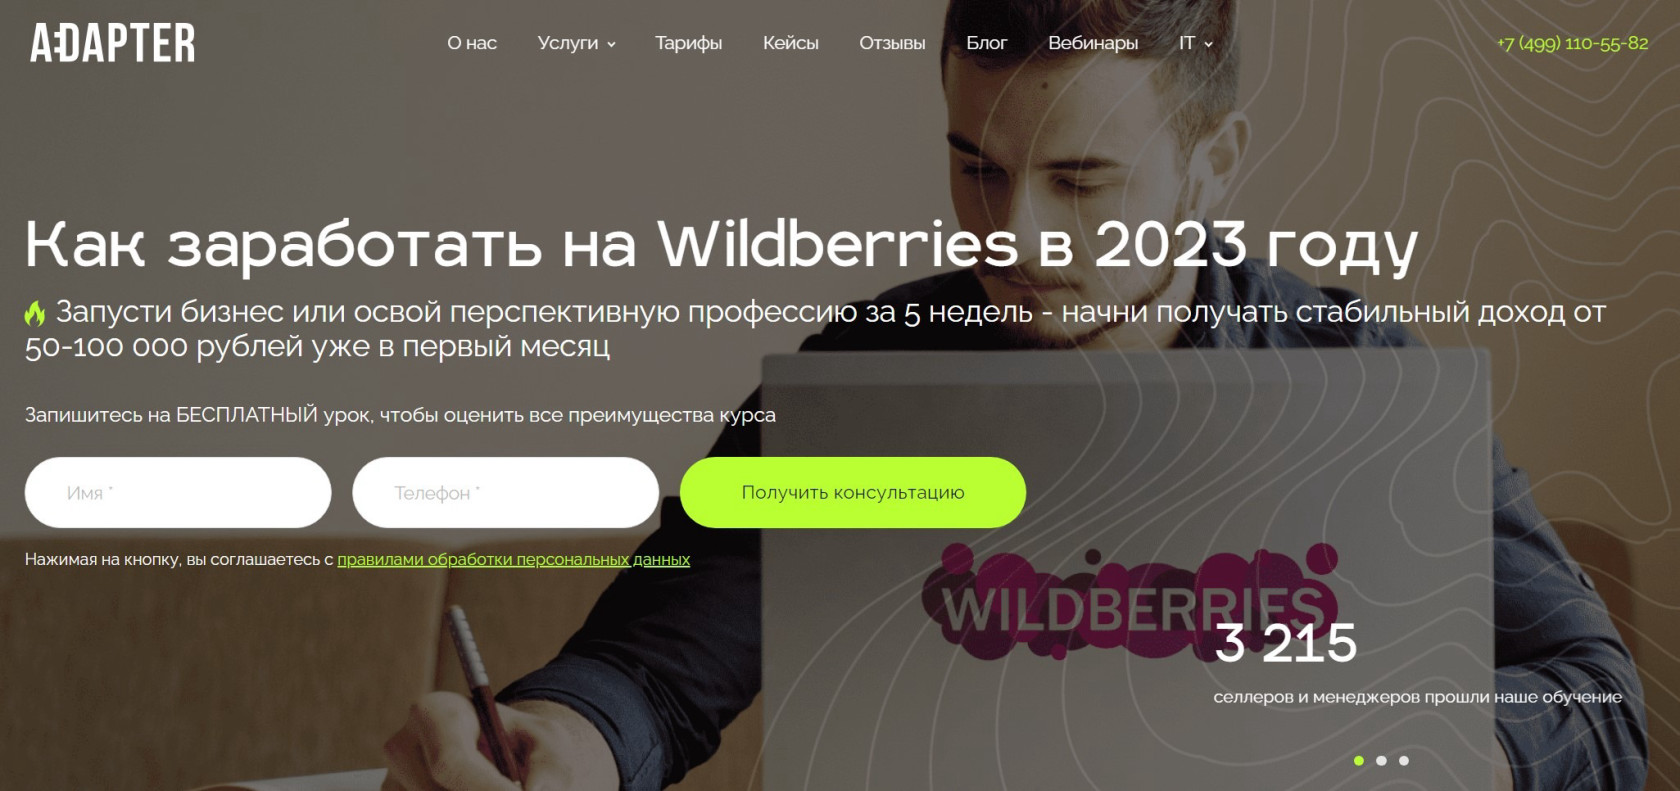 "Как заработать на Wildberries в 2023 году" от Adapter